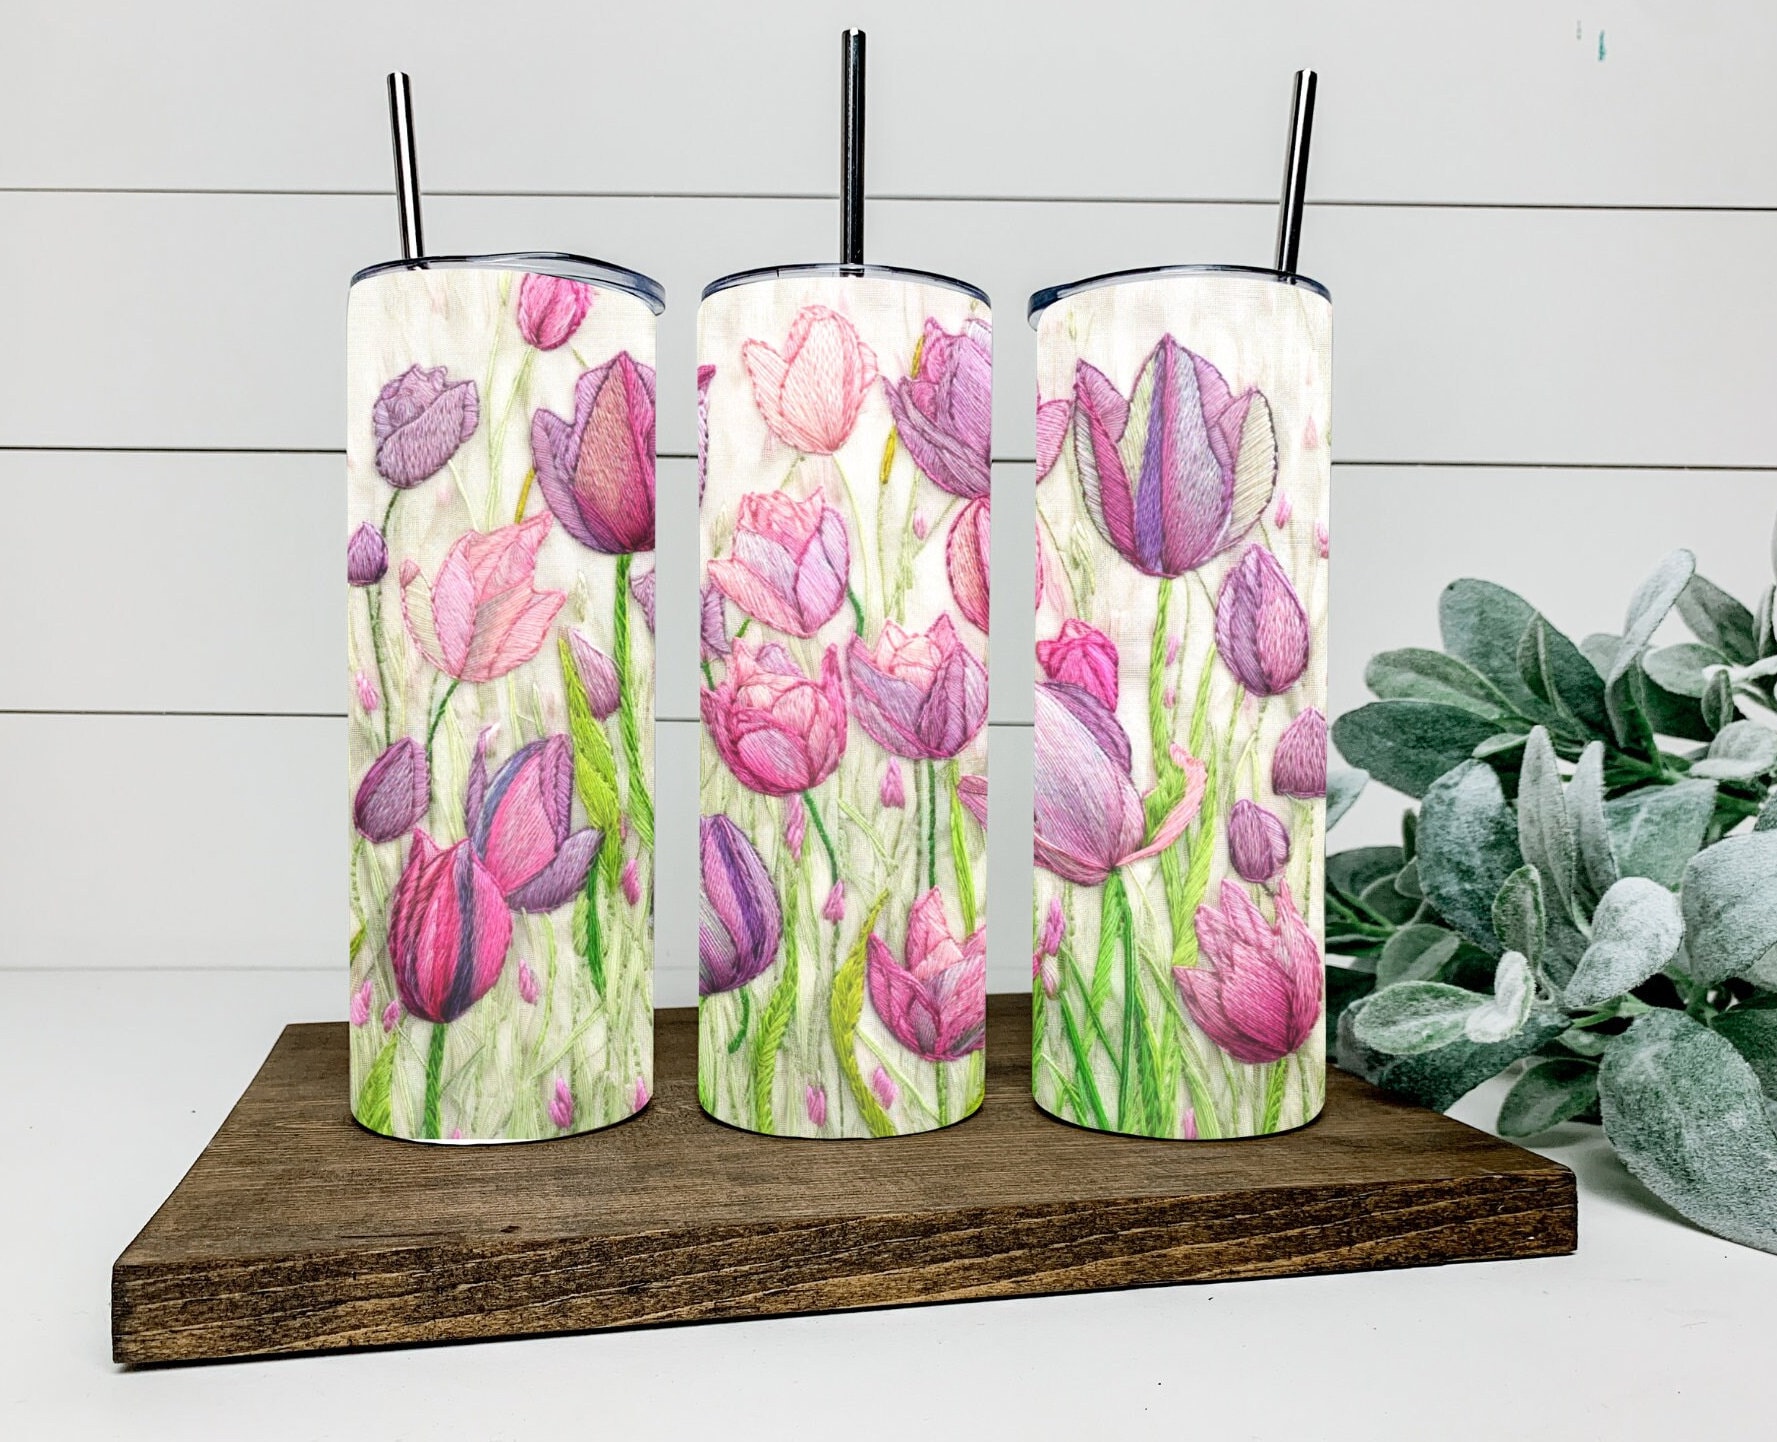 Tulip Brand Fabric Paint Dauber 1.01 FL OZ Price Per Bottle